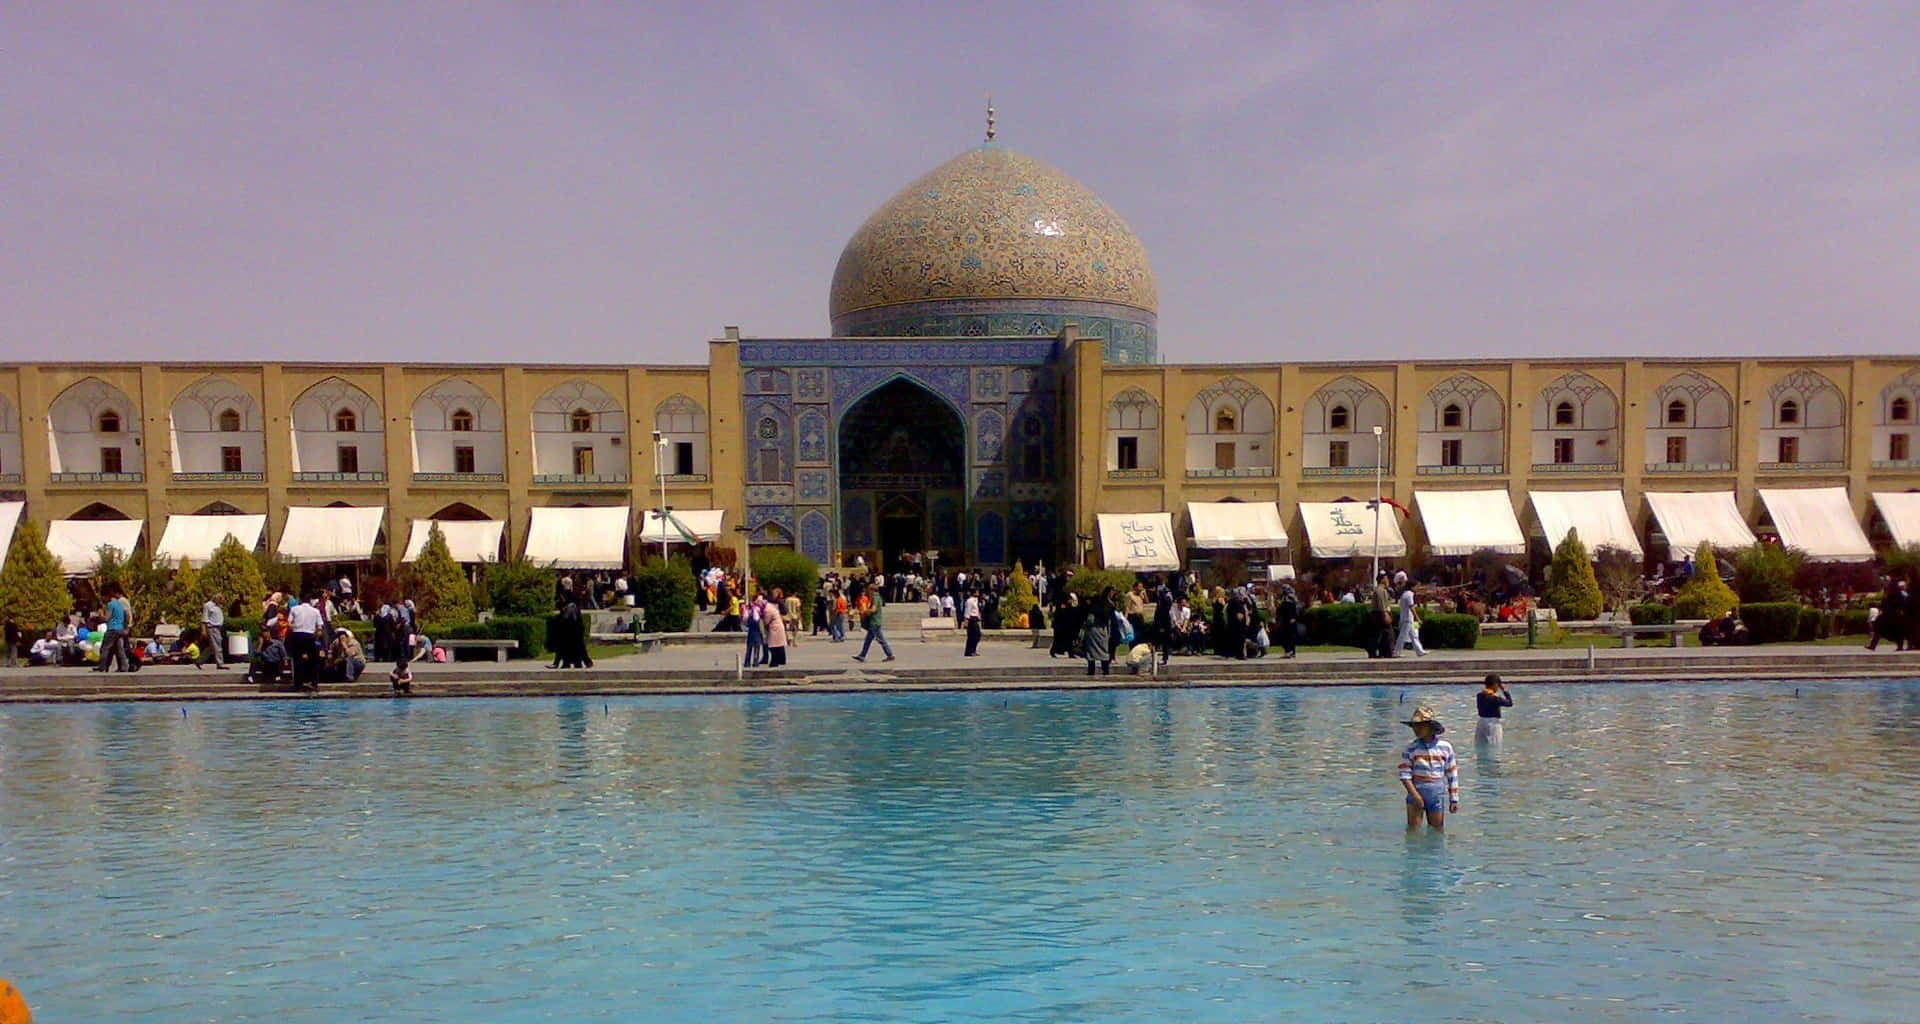 Isfahan People Visiting The Sheikh Lotfollah Wallpaper